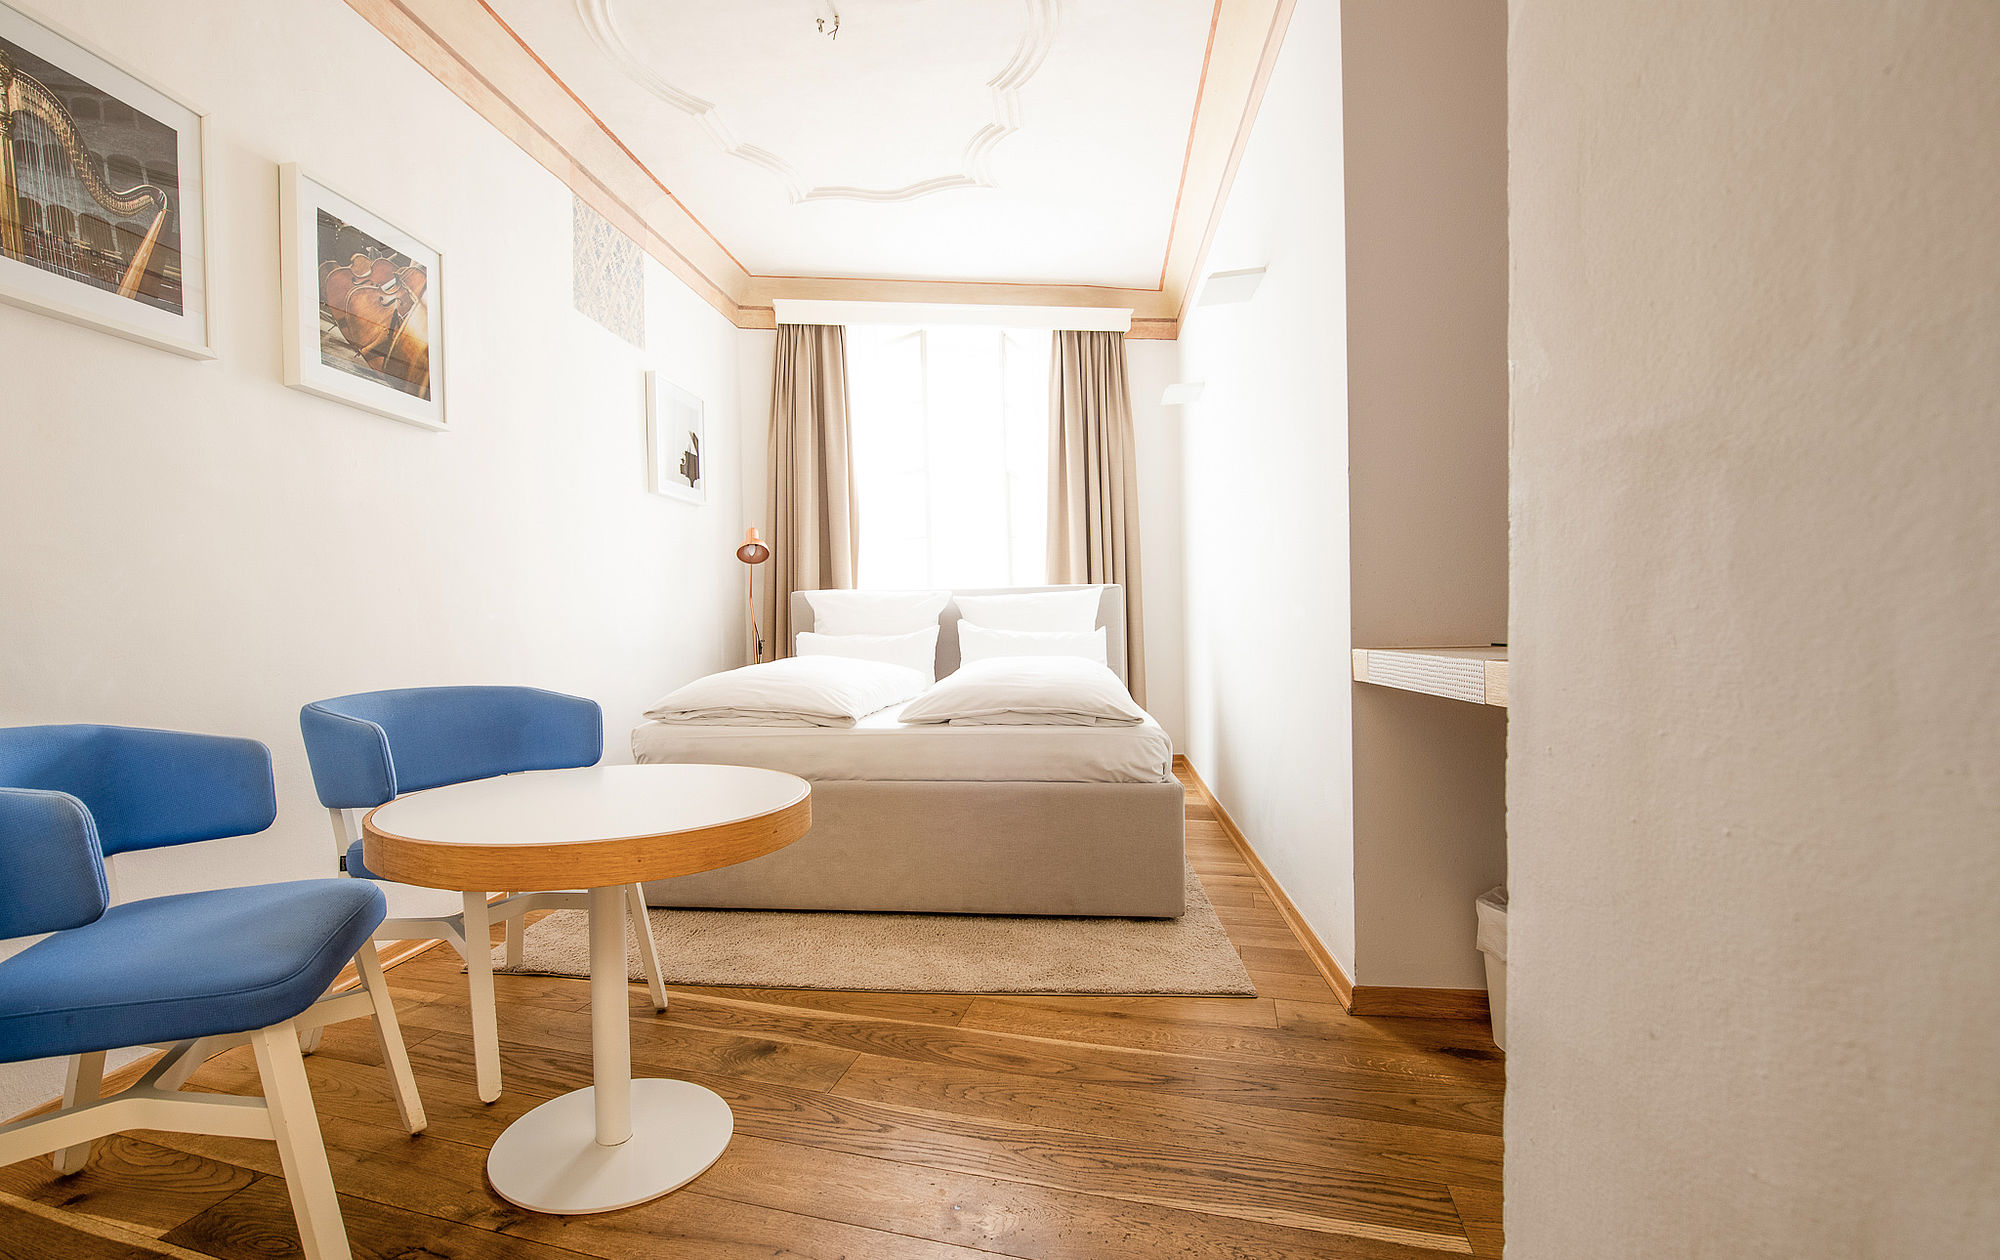 Doppelzimmer mit Bett in der Ecke und Stühlen mit Tischchen im Vordergrund im Boutique Hotel Salzburg